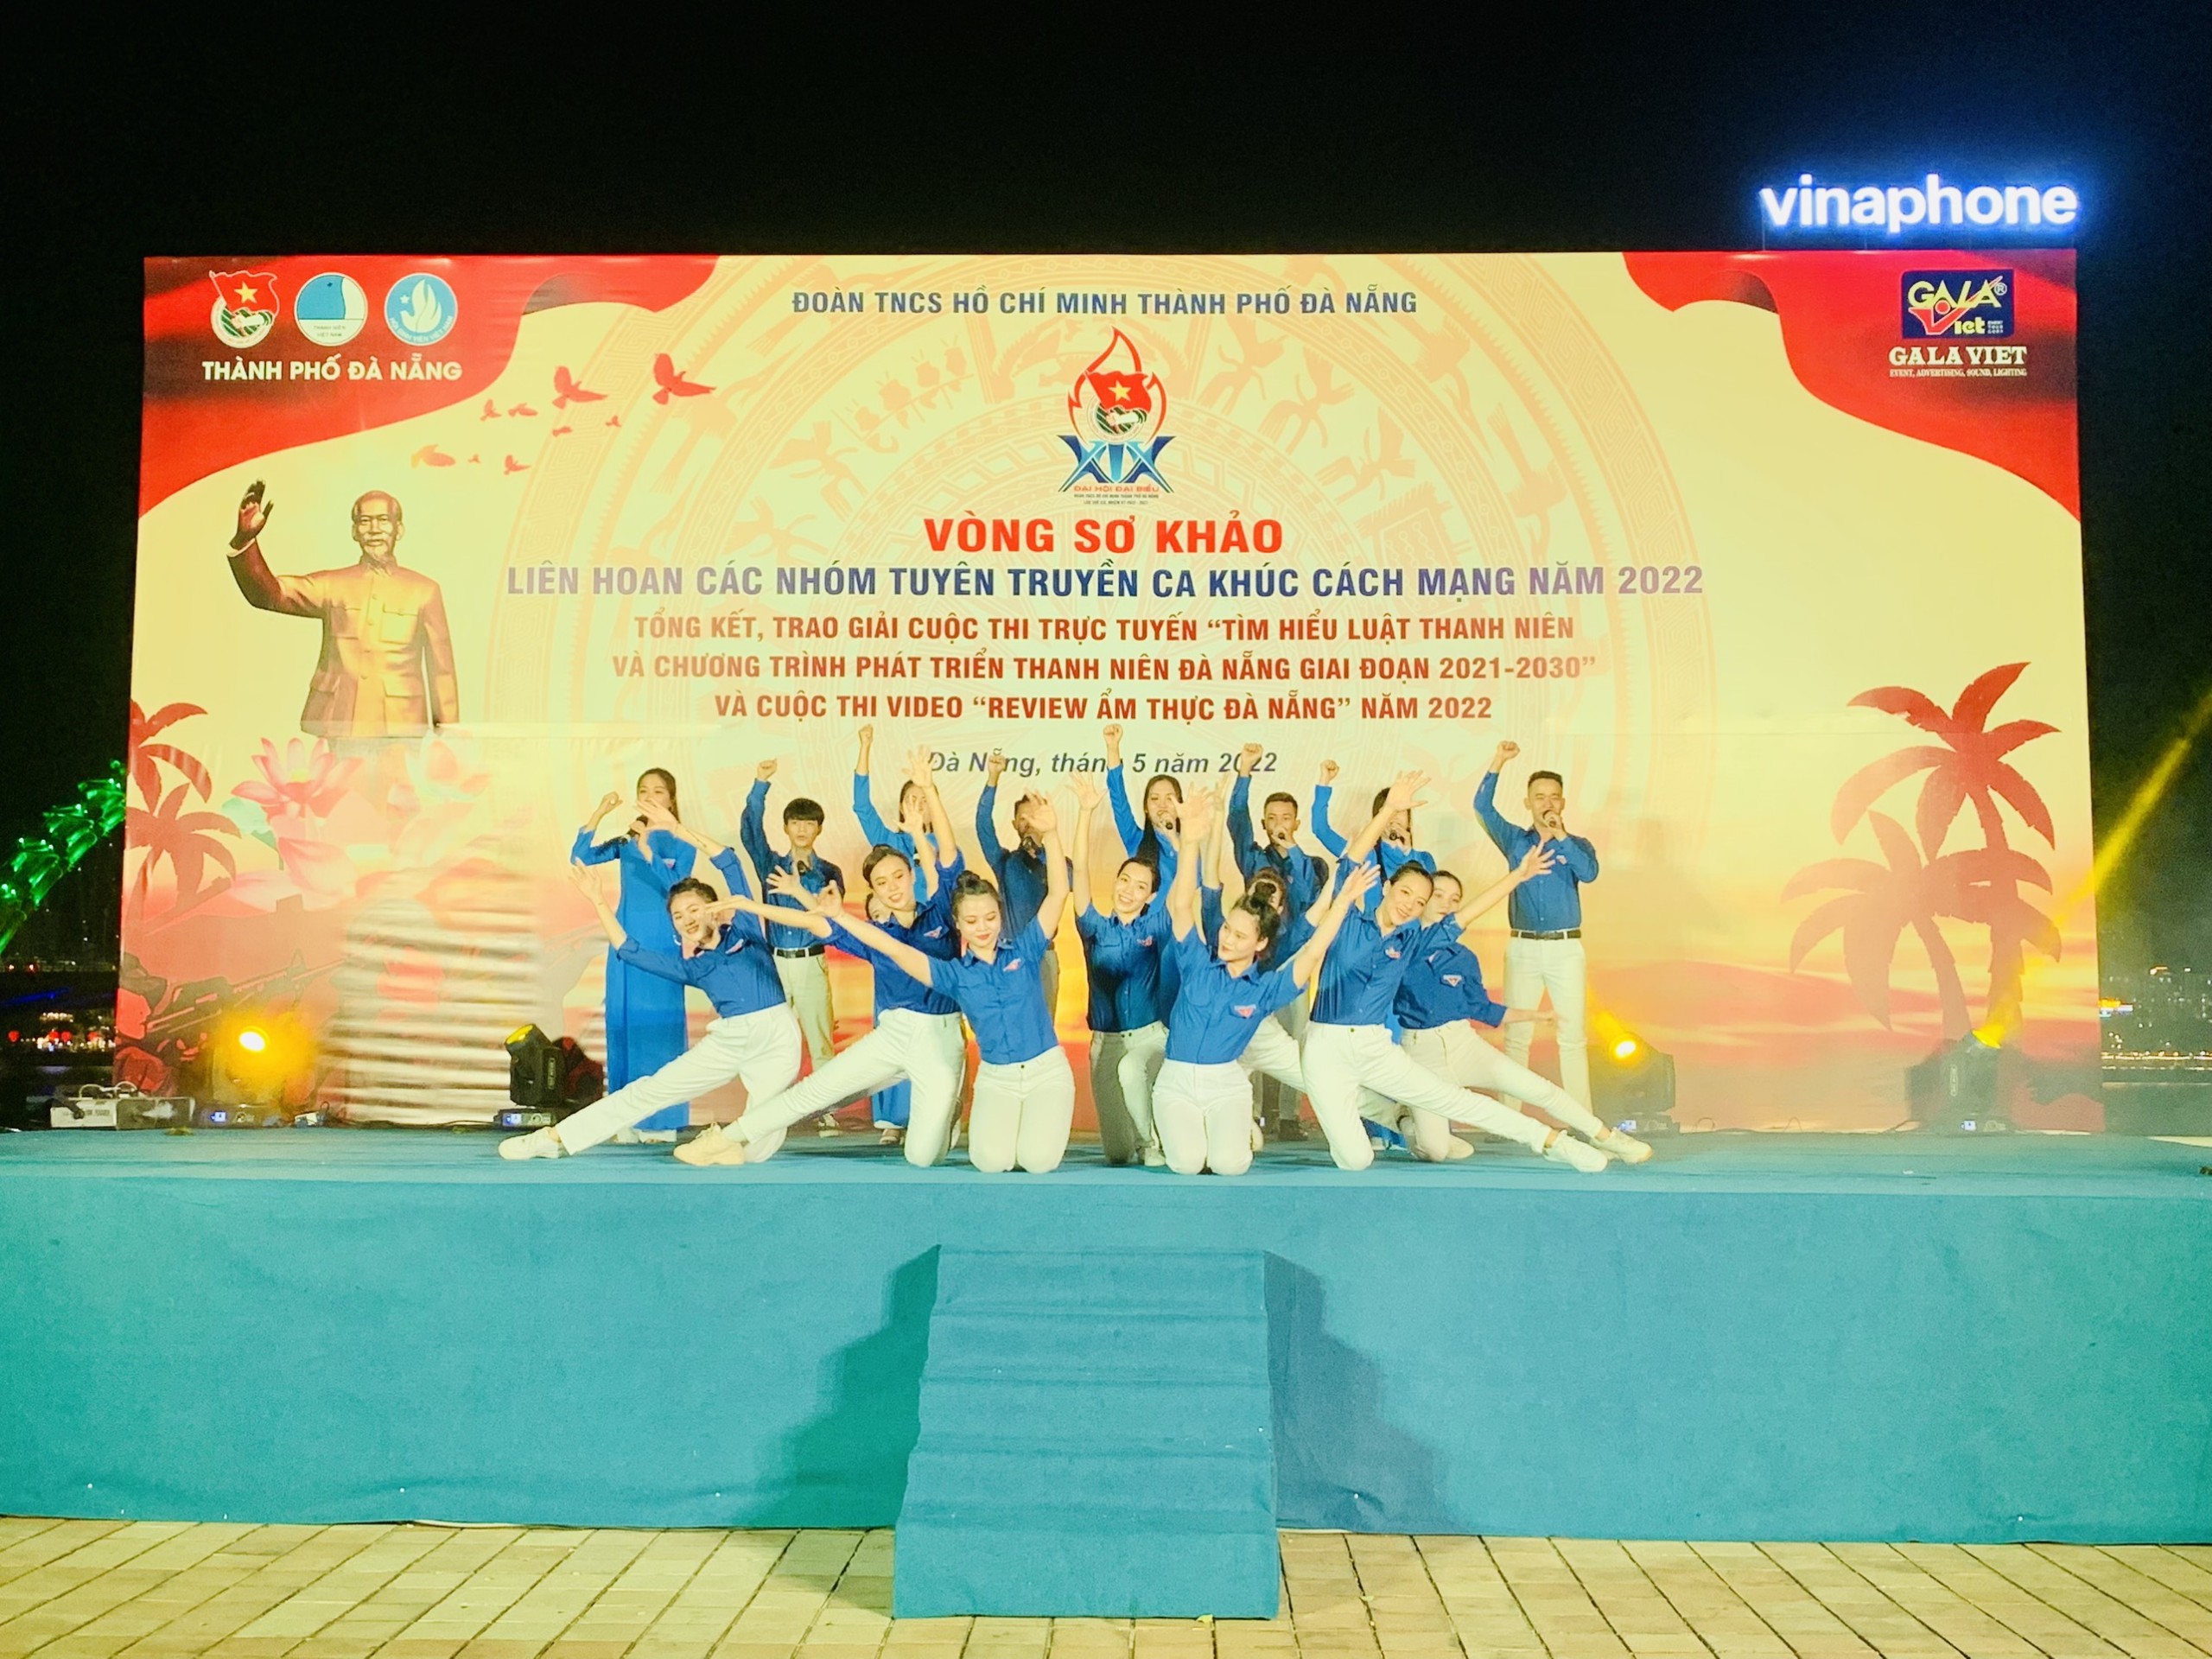 Thành Đoàn tổ chức liên hoan các Nhóm tuyên truyền các ca khúc cách mạng thành phố Đà Nẵng năm 2022 với chủ đề “KHÚC TRÁNG CA HÀO HÙNG”